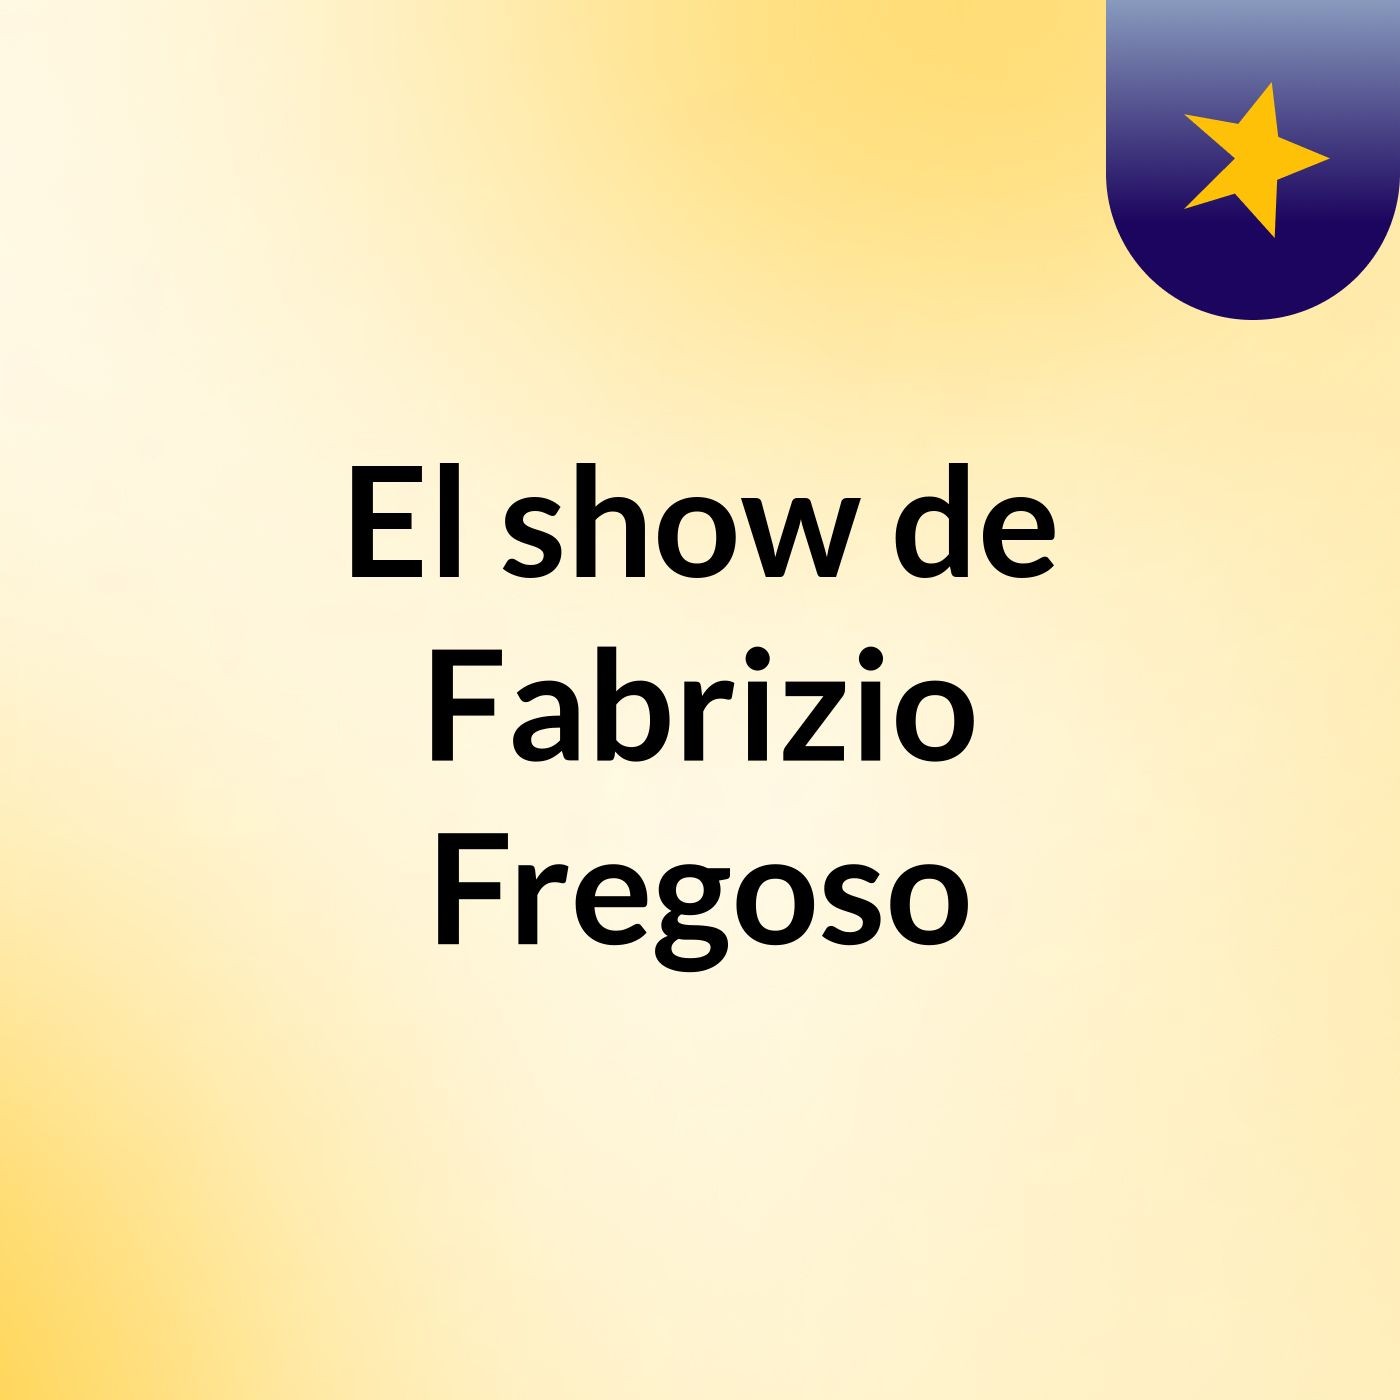 El show de Fabrizio Fregoso